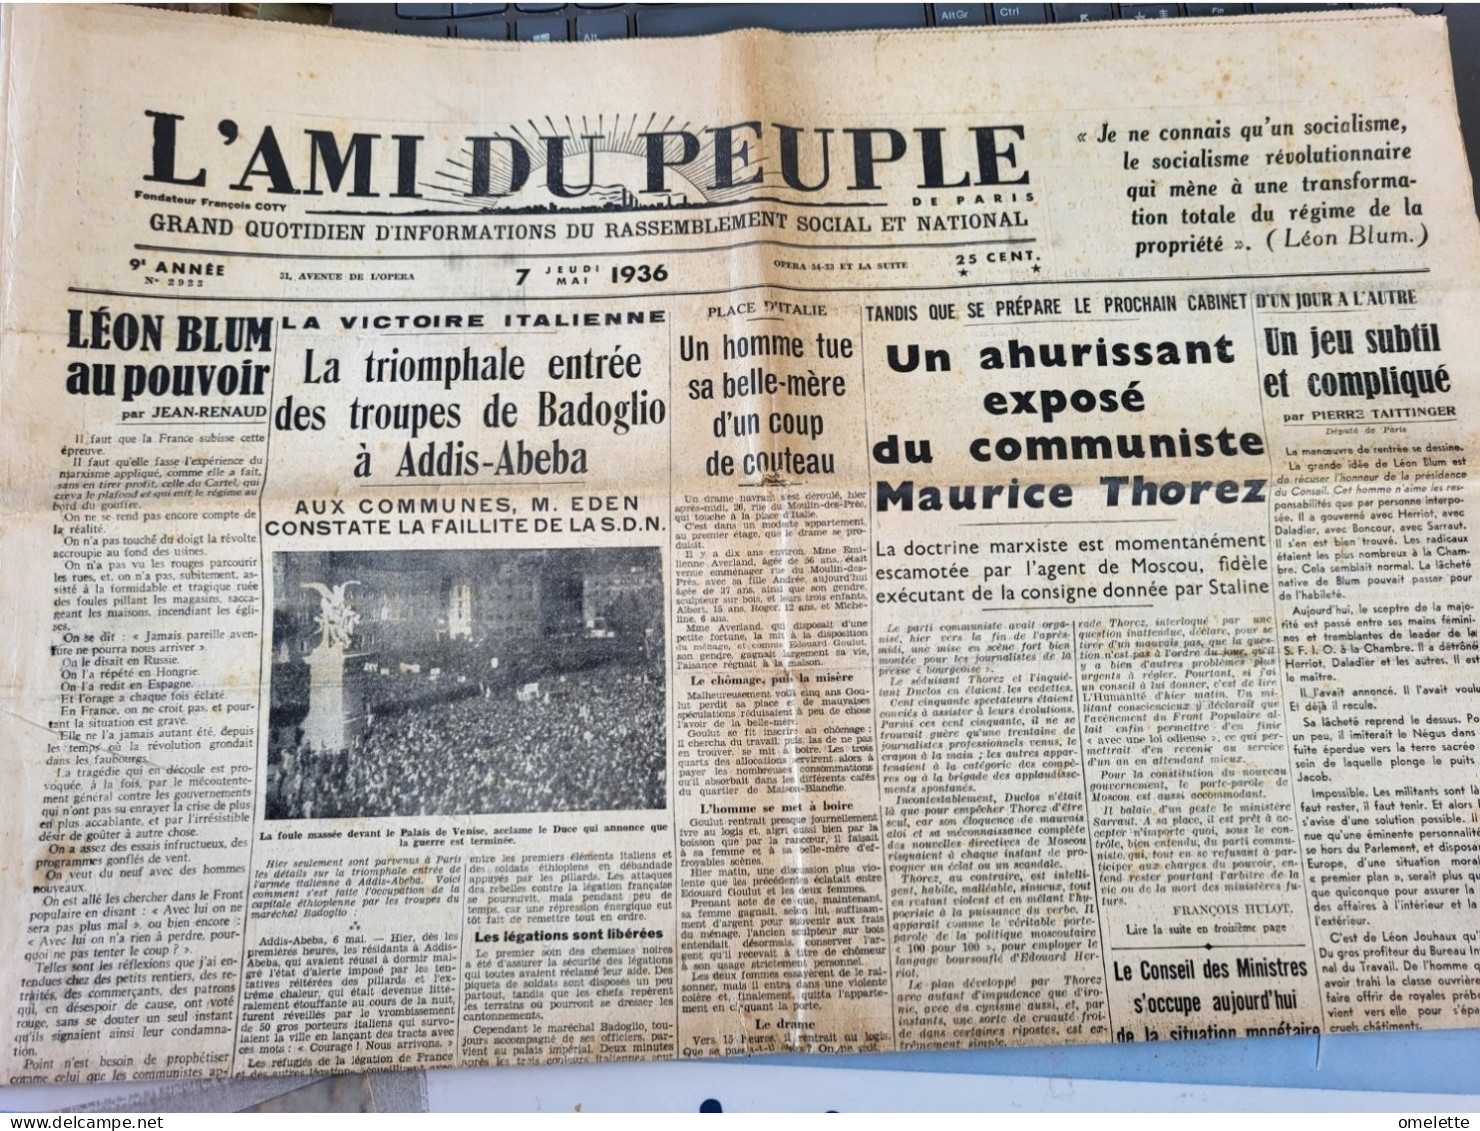 AMI PEUPLE 36 /ETHIOPIE VICTOIRE ITALIE /EXPOSE THOREZ /MORT DALIMIER MORT /CHANCEL BLUM /DUEL ETUDIANTS ALLEMANDS - Havre Libre